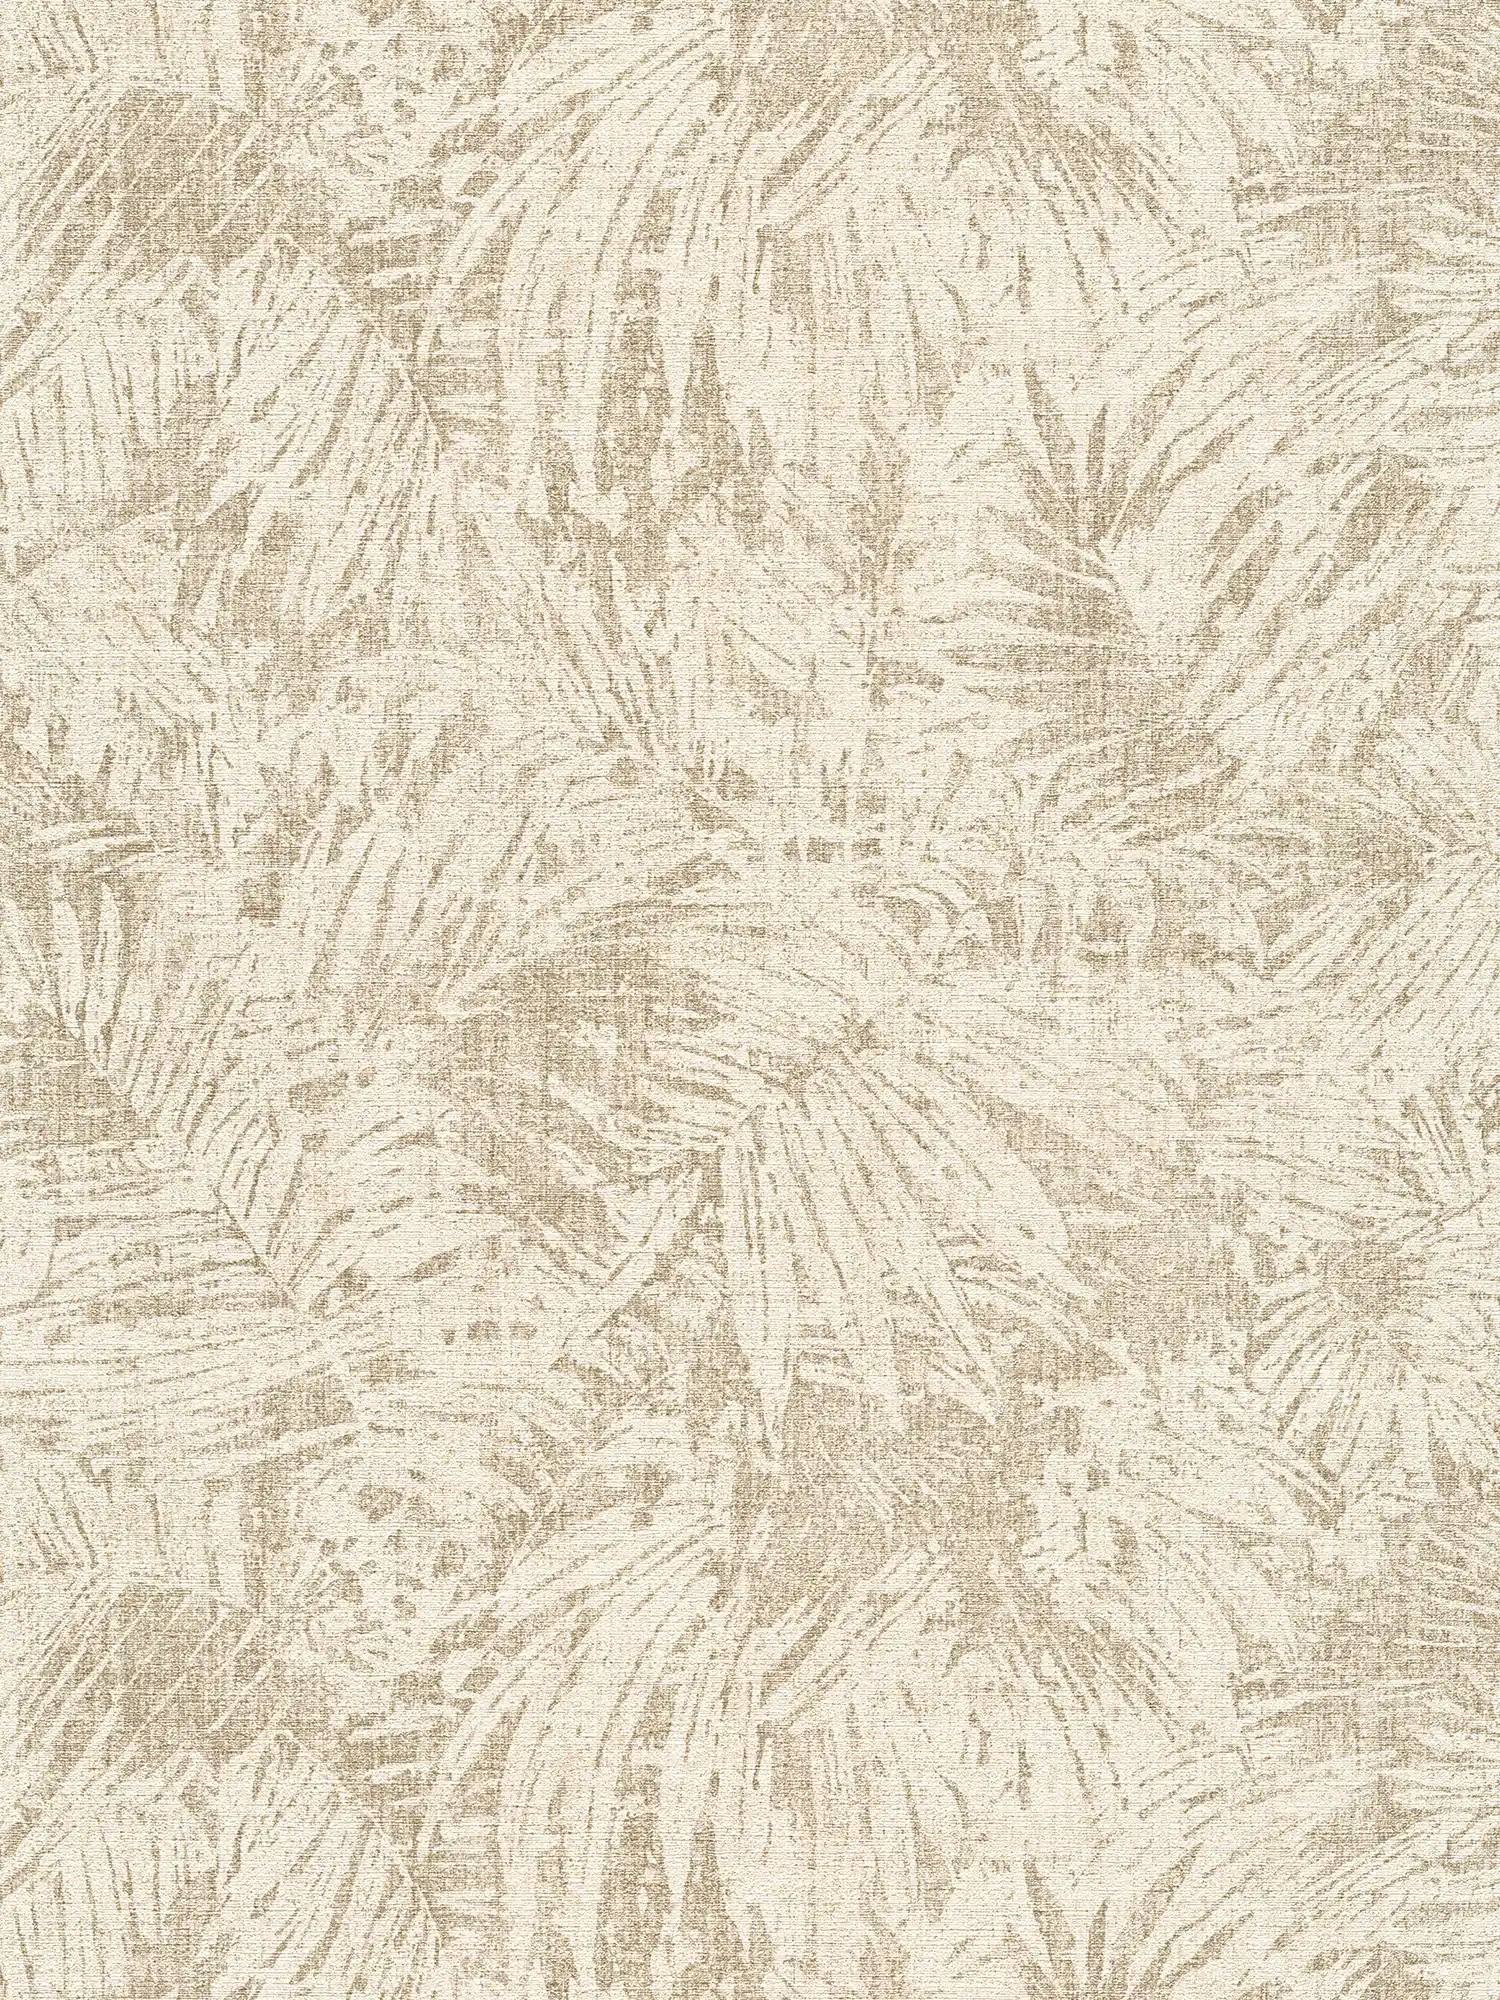 behang bladerenpatroon & linneneffect in koloniale stijl - bruin, beige
